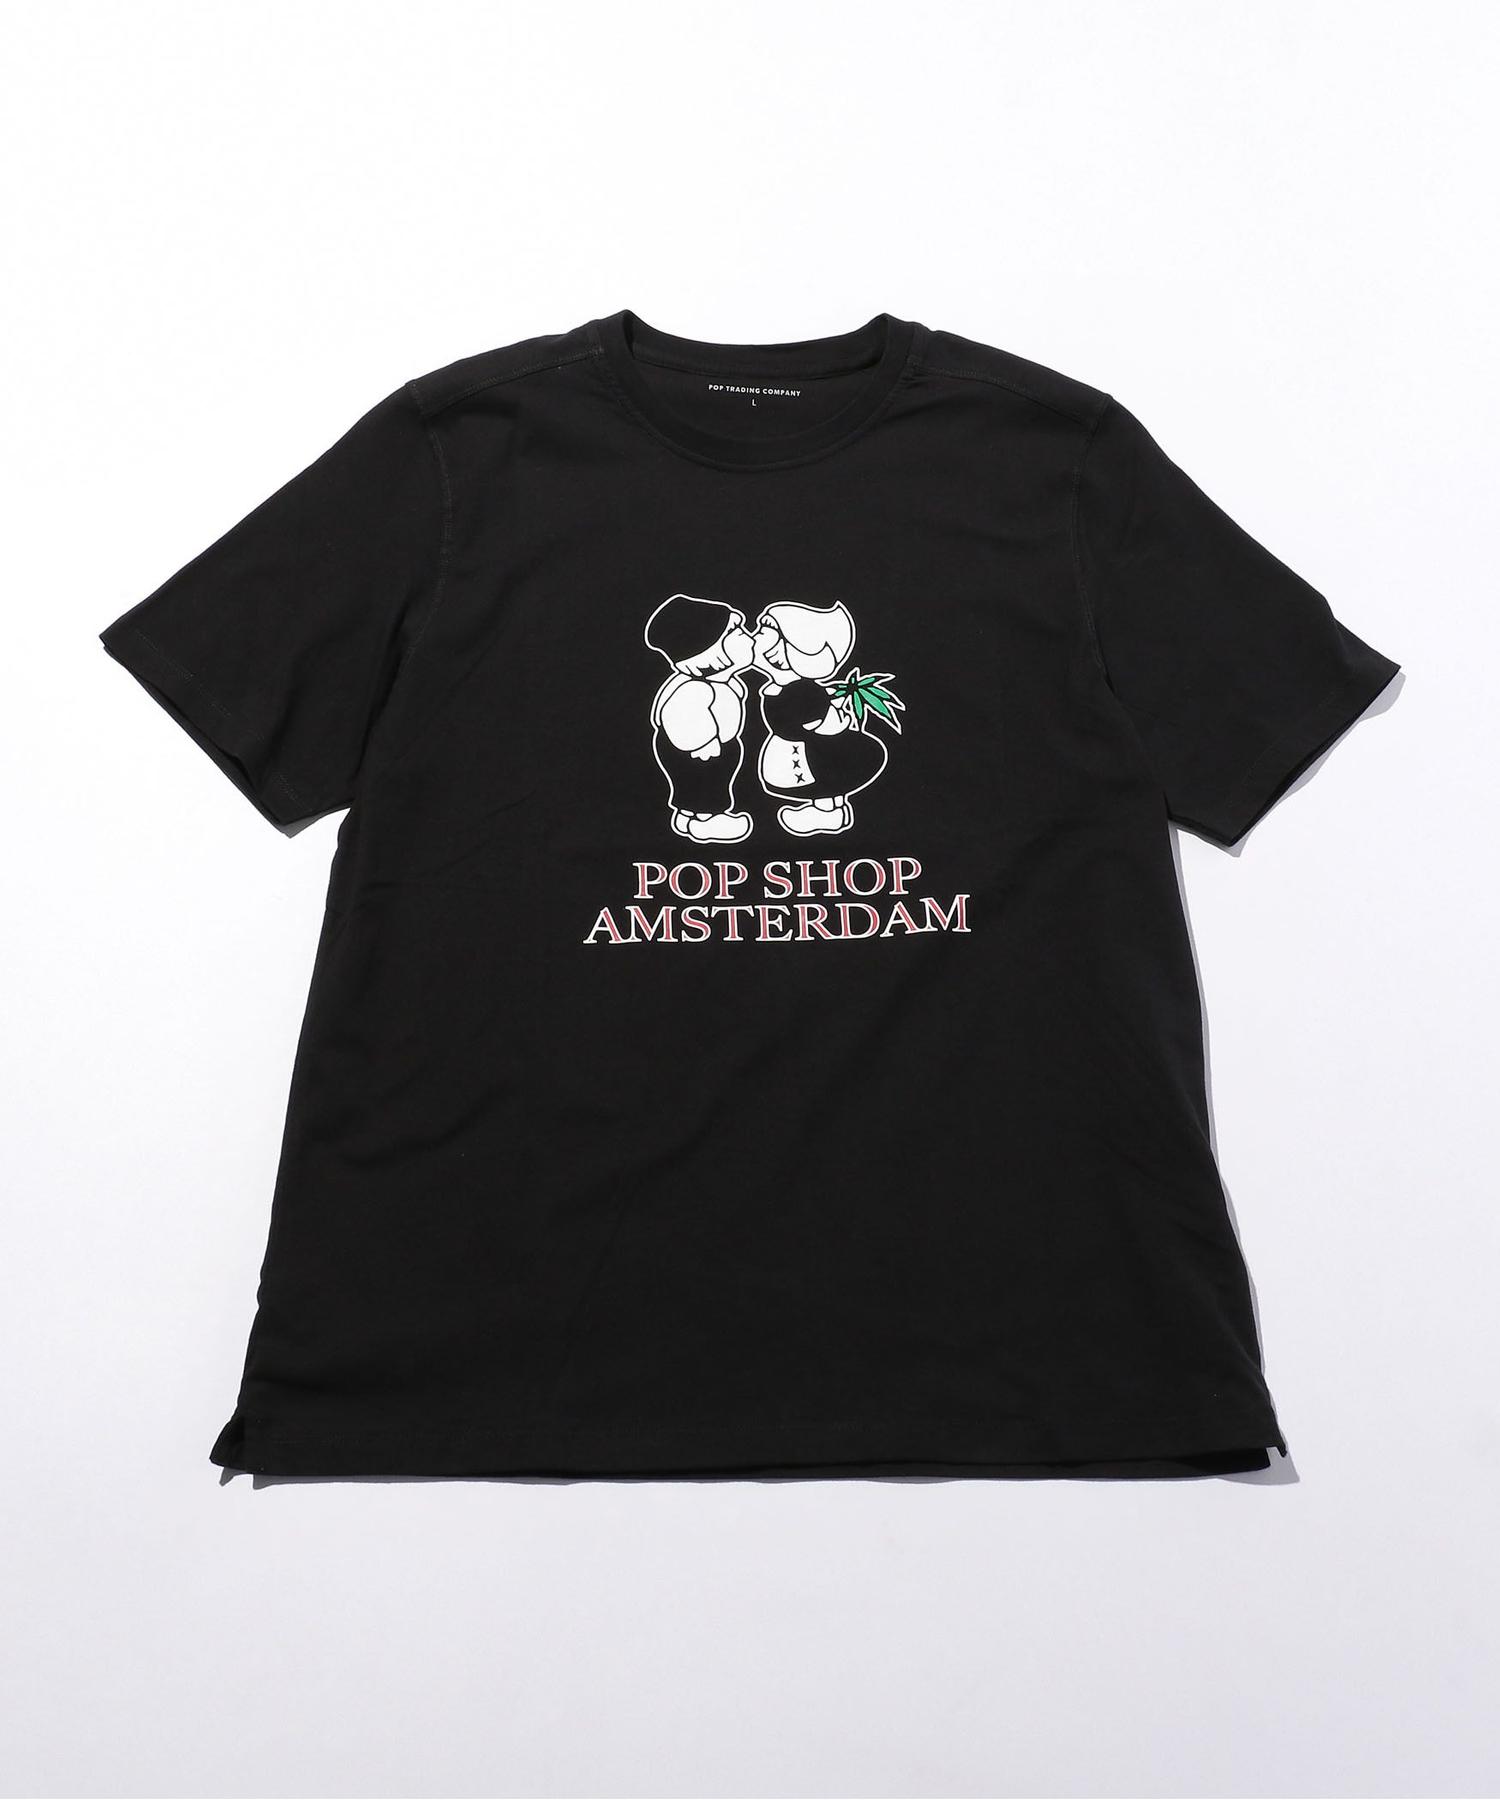 商品詳細 Pop Trading Company ポップ トレーディング カンパニー Amsterdam T Tシャツ Beauty Youth ビューティ ユース 公式通販